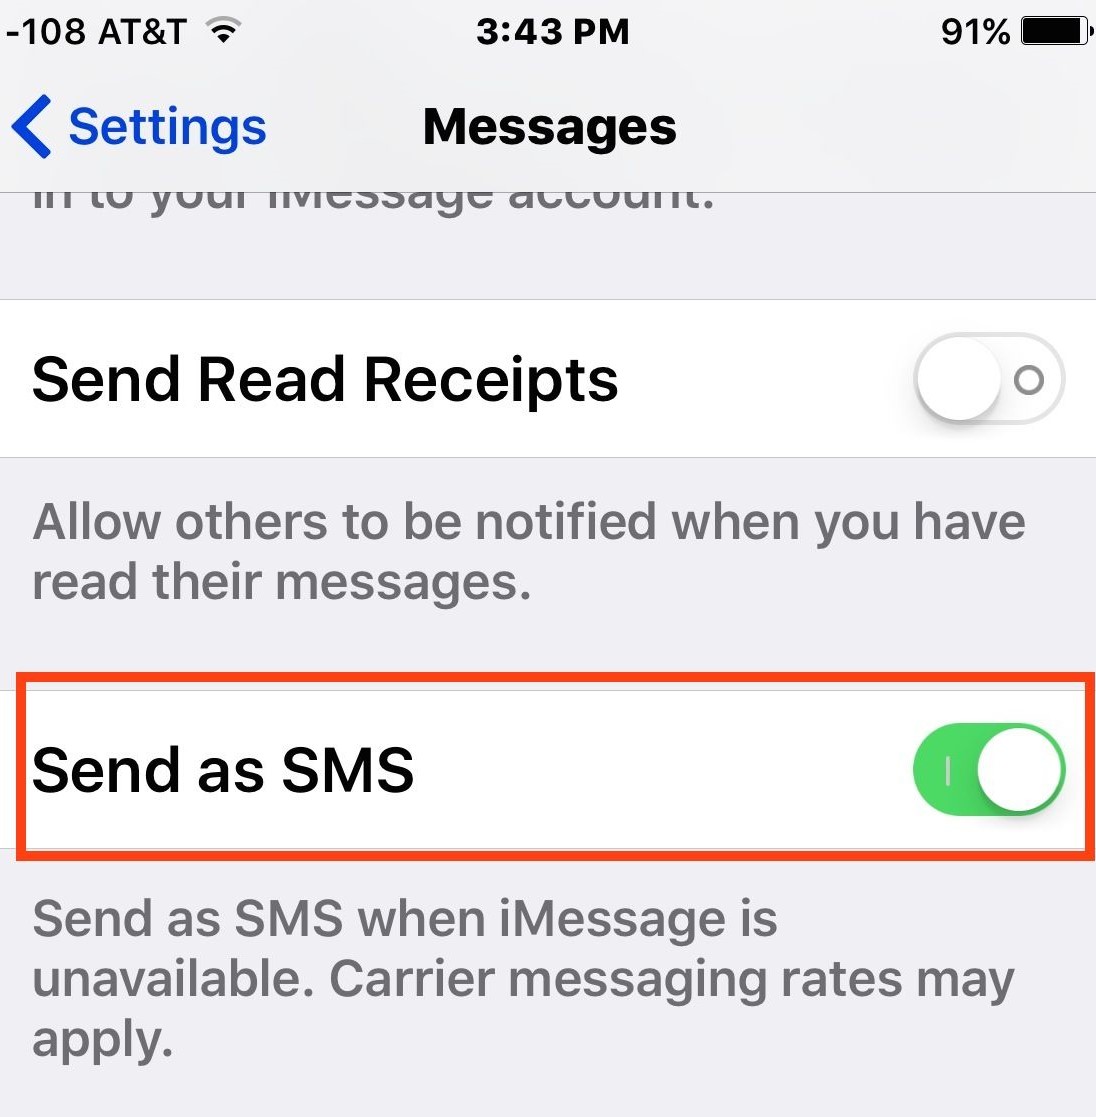 send as sms